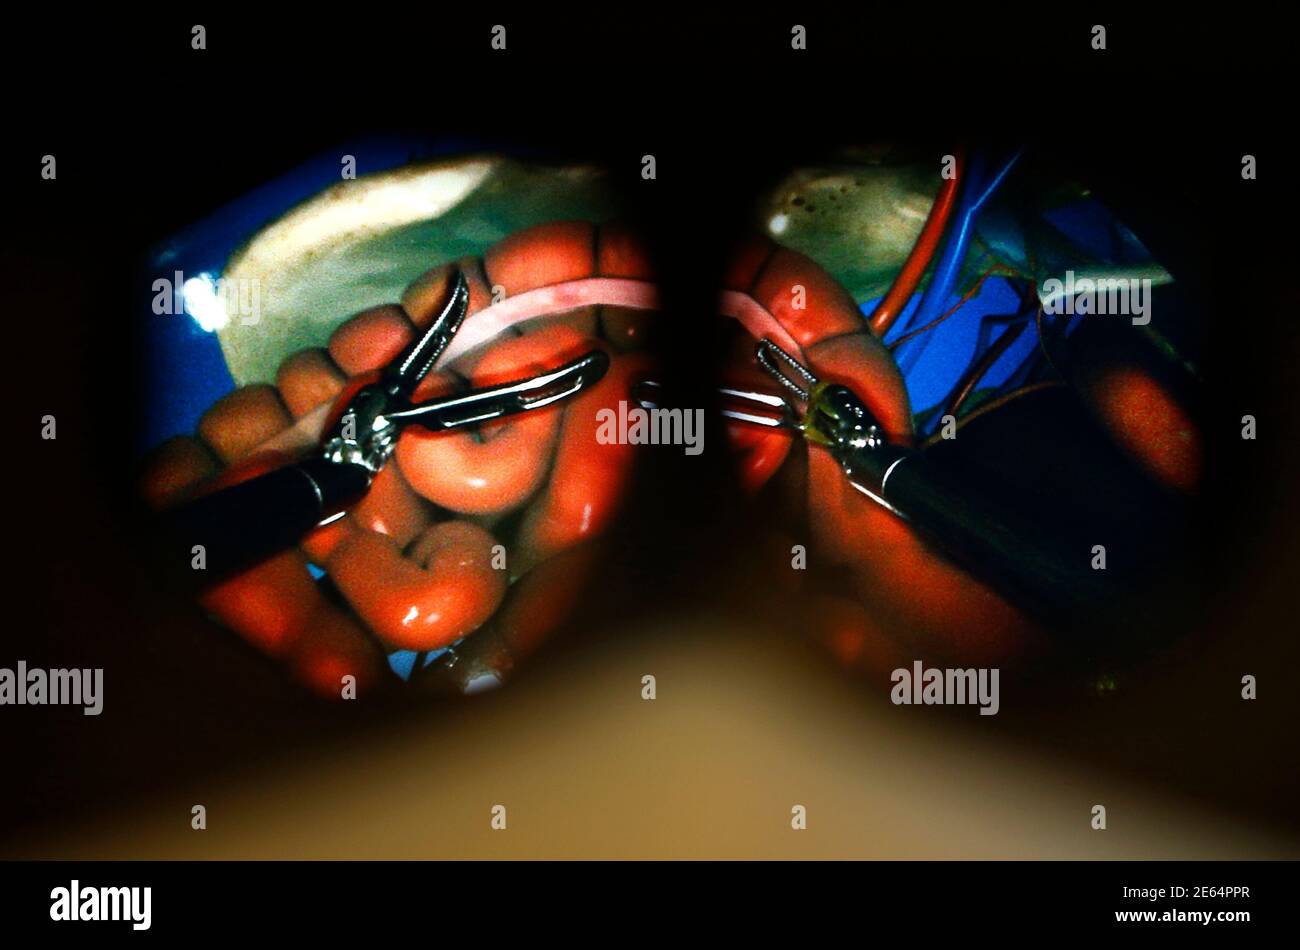 La visione di ciò che un chirurgo vedrebbe è mostrata con un'immagine tridimensionale su un sistema chirurgico da Vinci Xi realizzato da intuitivo chirurgico durante una dimostrazione del robot chirurgico al Palomar Medical Center di Escondido, California 3 dicembre 2014. Il robot di chirurgia minimamente invasiva è un salto tecnologico in avanti nella sostituzione di interventi addominali a grande incisione (chirurgia aperta) ed è ora ottimizzato per interventi chirurgici complessi a più quadranti. REUTERS/Mike Blake (STATI UNITI - Tag: TECNOLOGIA DELLA SCIENZA DELLA SALUTE) Foto Stock